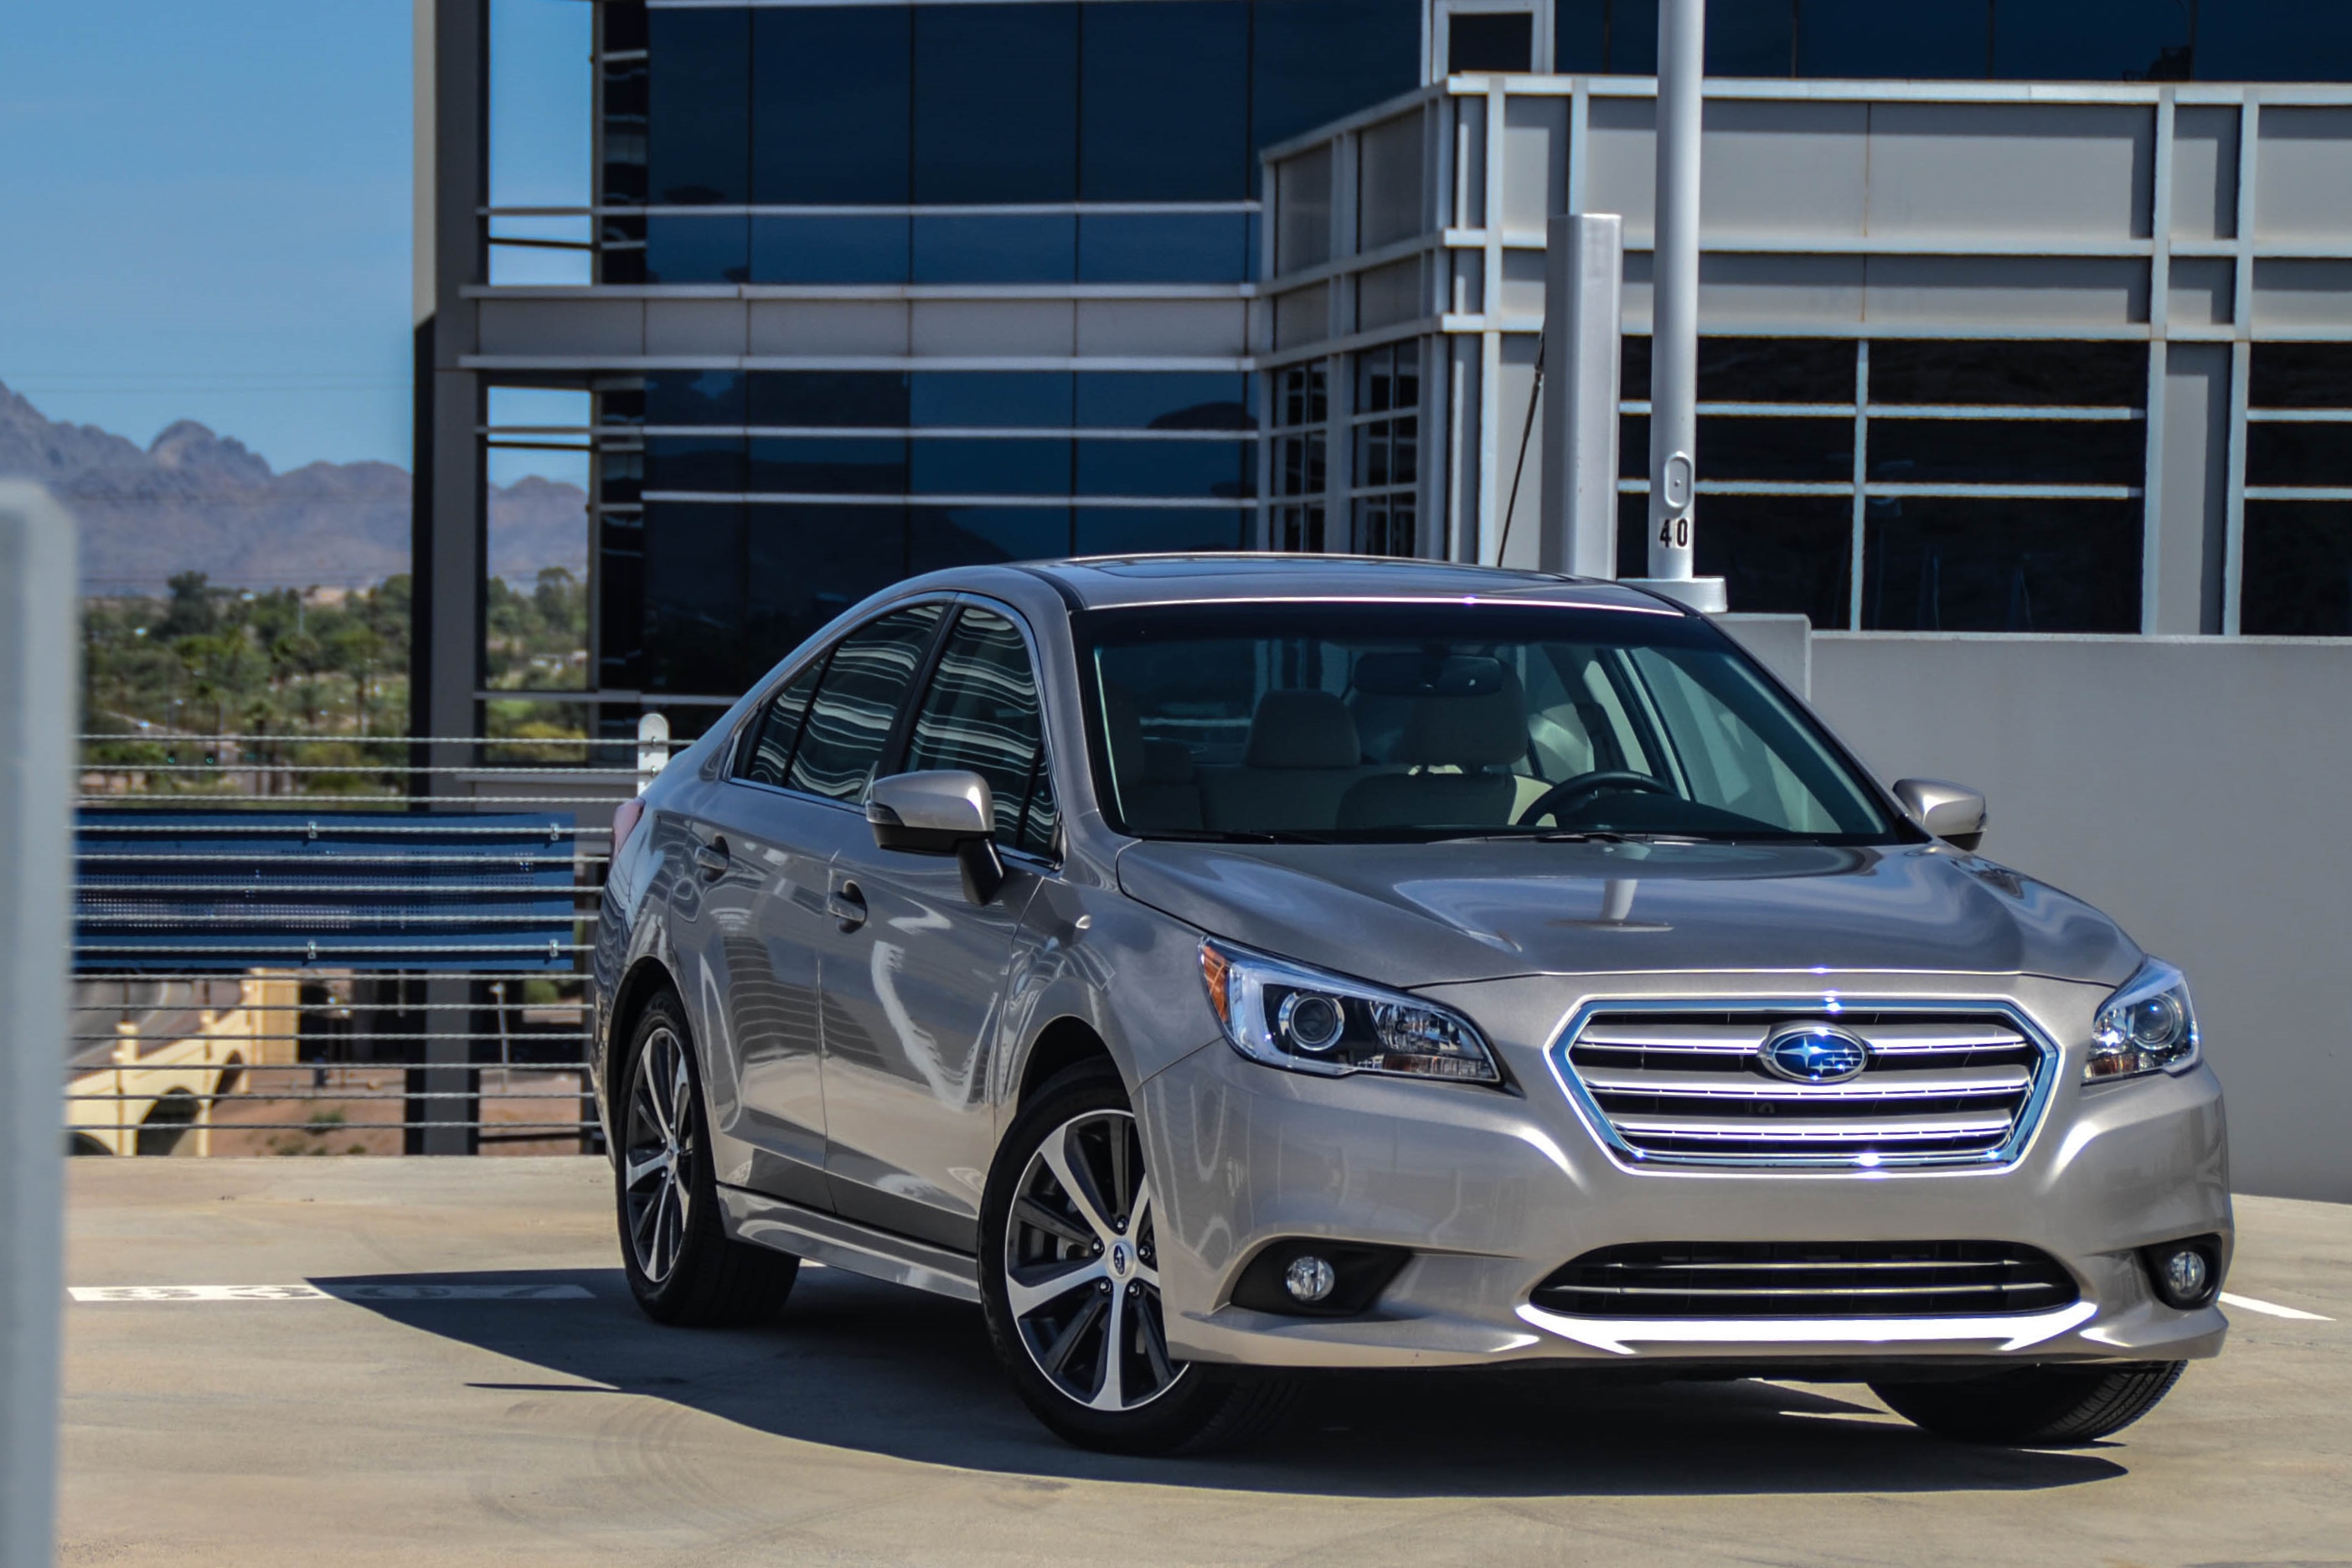 Thiết kế của Subaru Legacy 2015 được đánh giá là rất đẹp và hiện đại